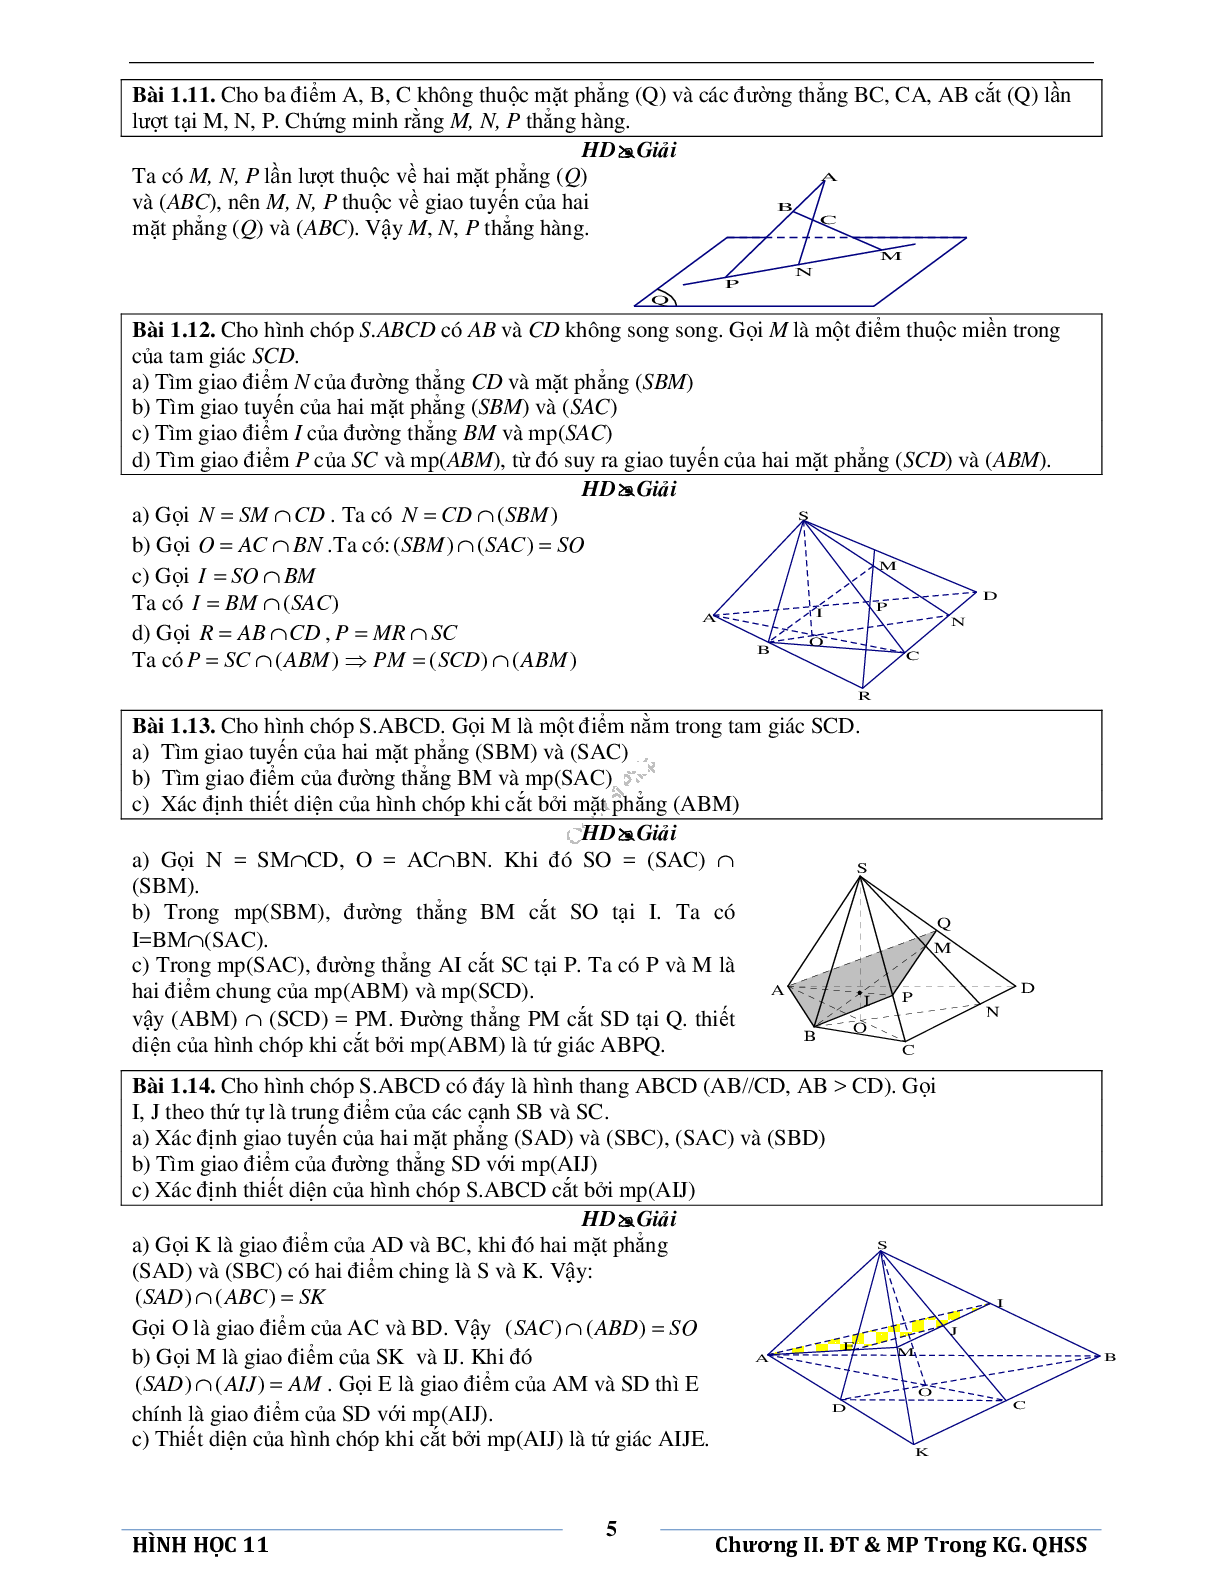 Đường thẳng và mặt phẳng trong không gian quan hệ song song (trang 8)